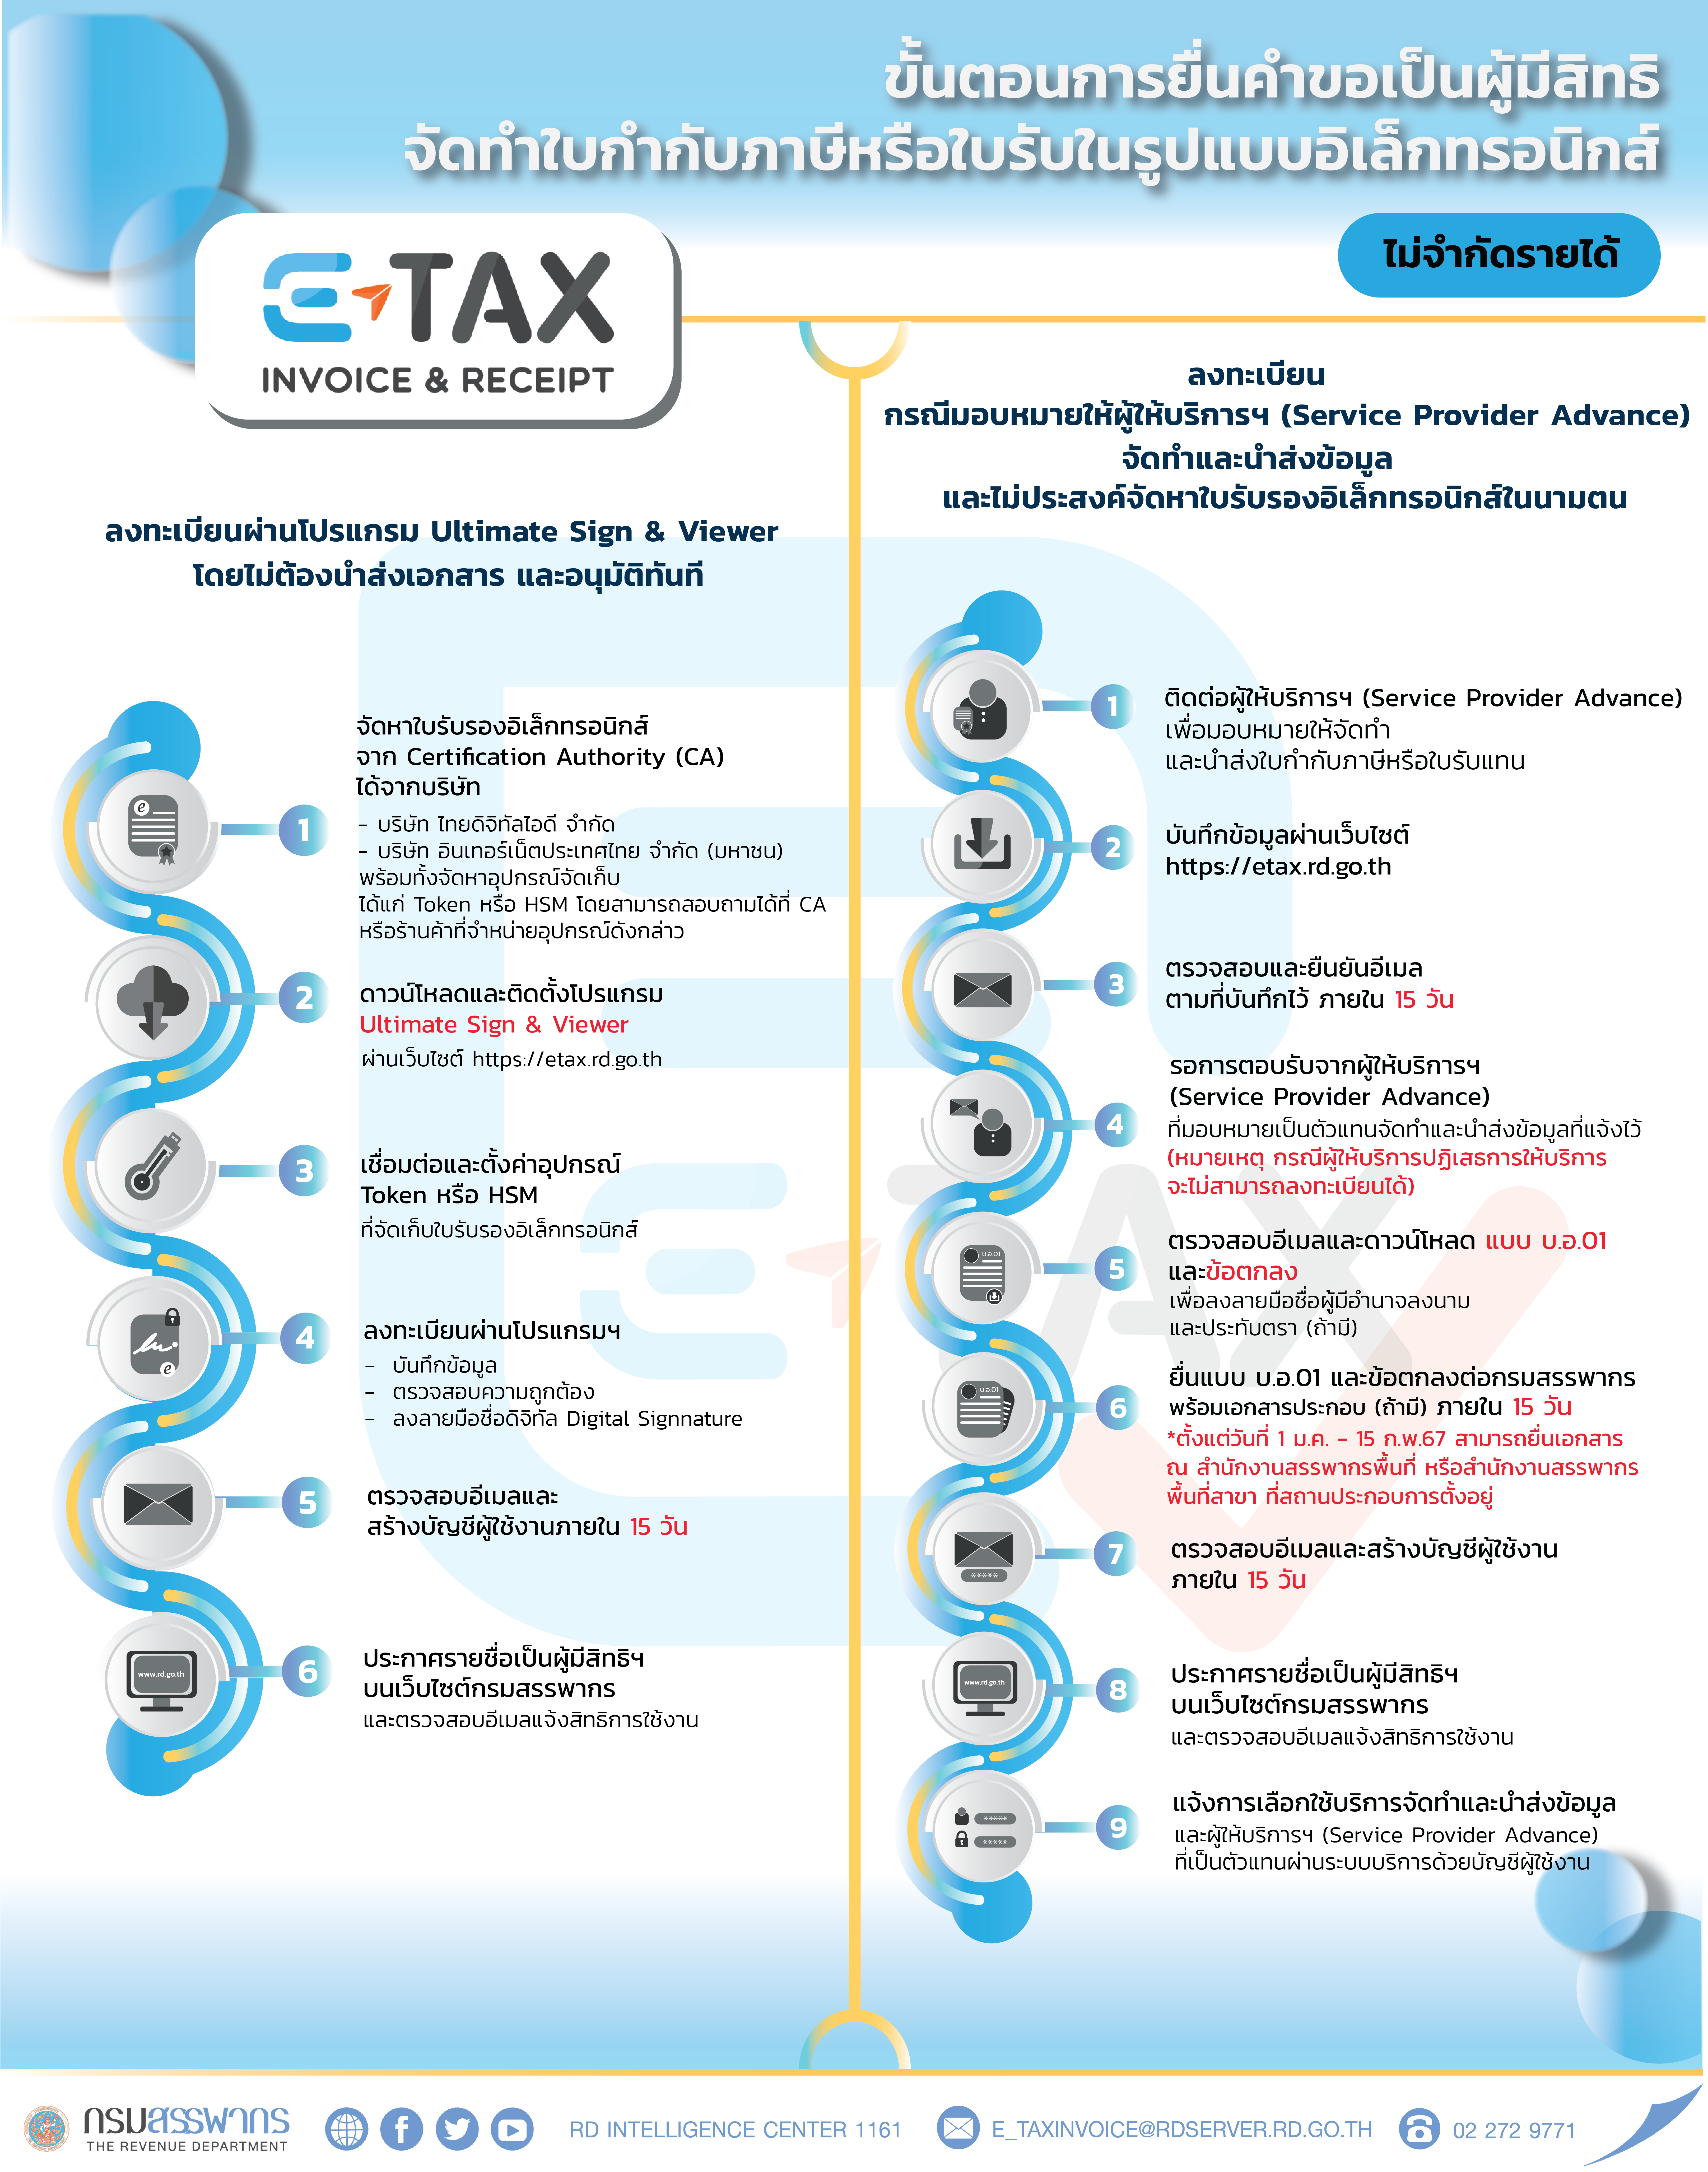 ขั้นตอนการยื่นคำขอเป็นผู้มีสิทธิจัดทำใบกำกับภาษีหรือใบรับในรูปแบบอิเล็กทรอนิกส์ (e-Tax ​Invoice​ & e-Receipt และ e-Tax Invoice by Time stamp)​